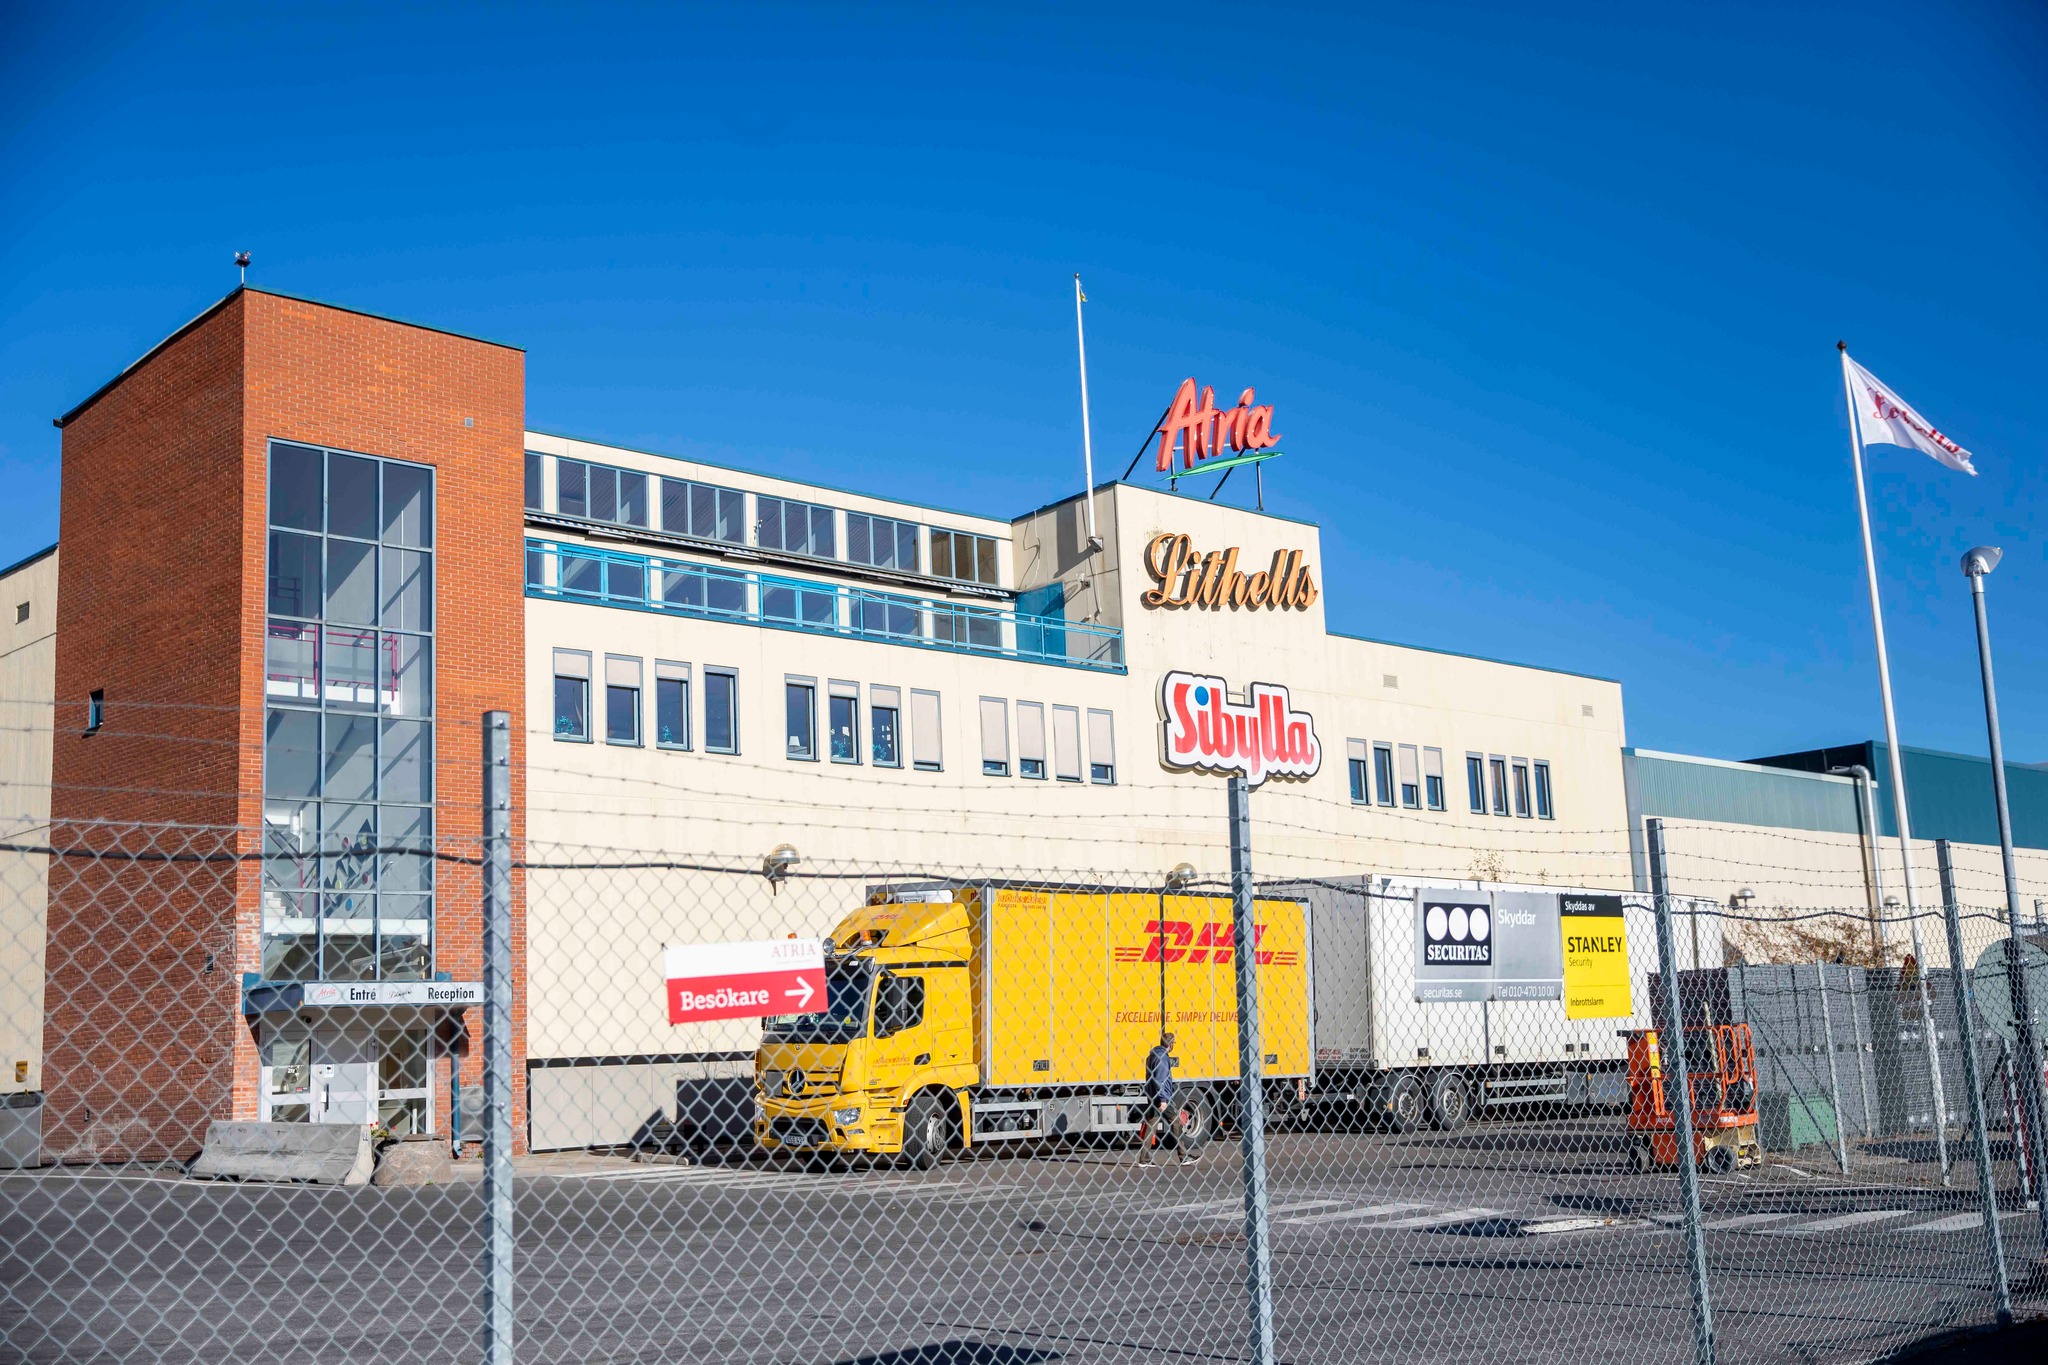 Byggnor bygger ut fabriken när Atria investerar i Sköllersta